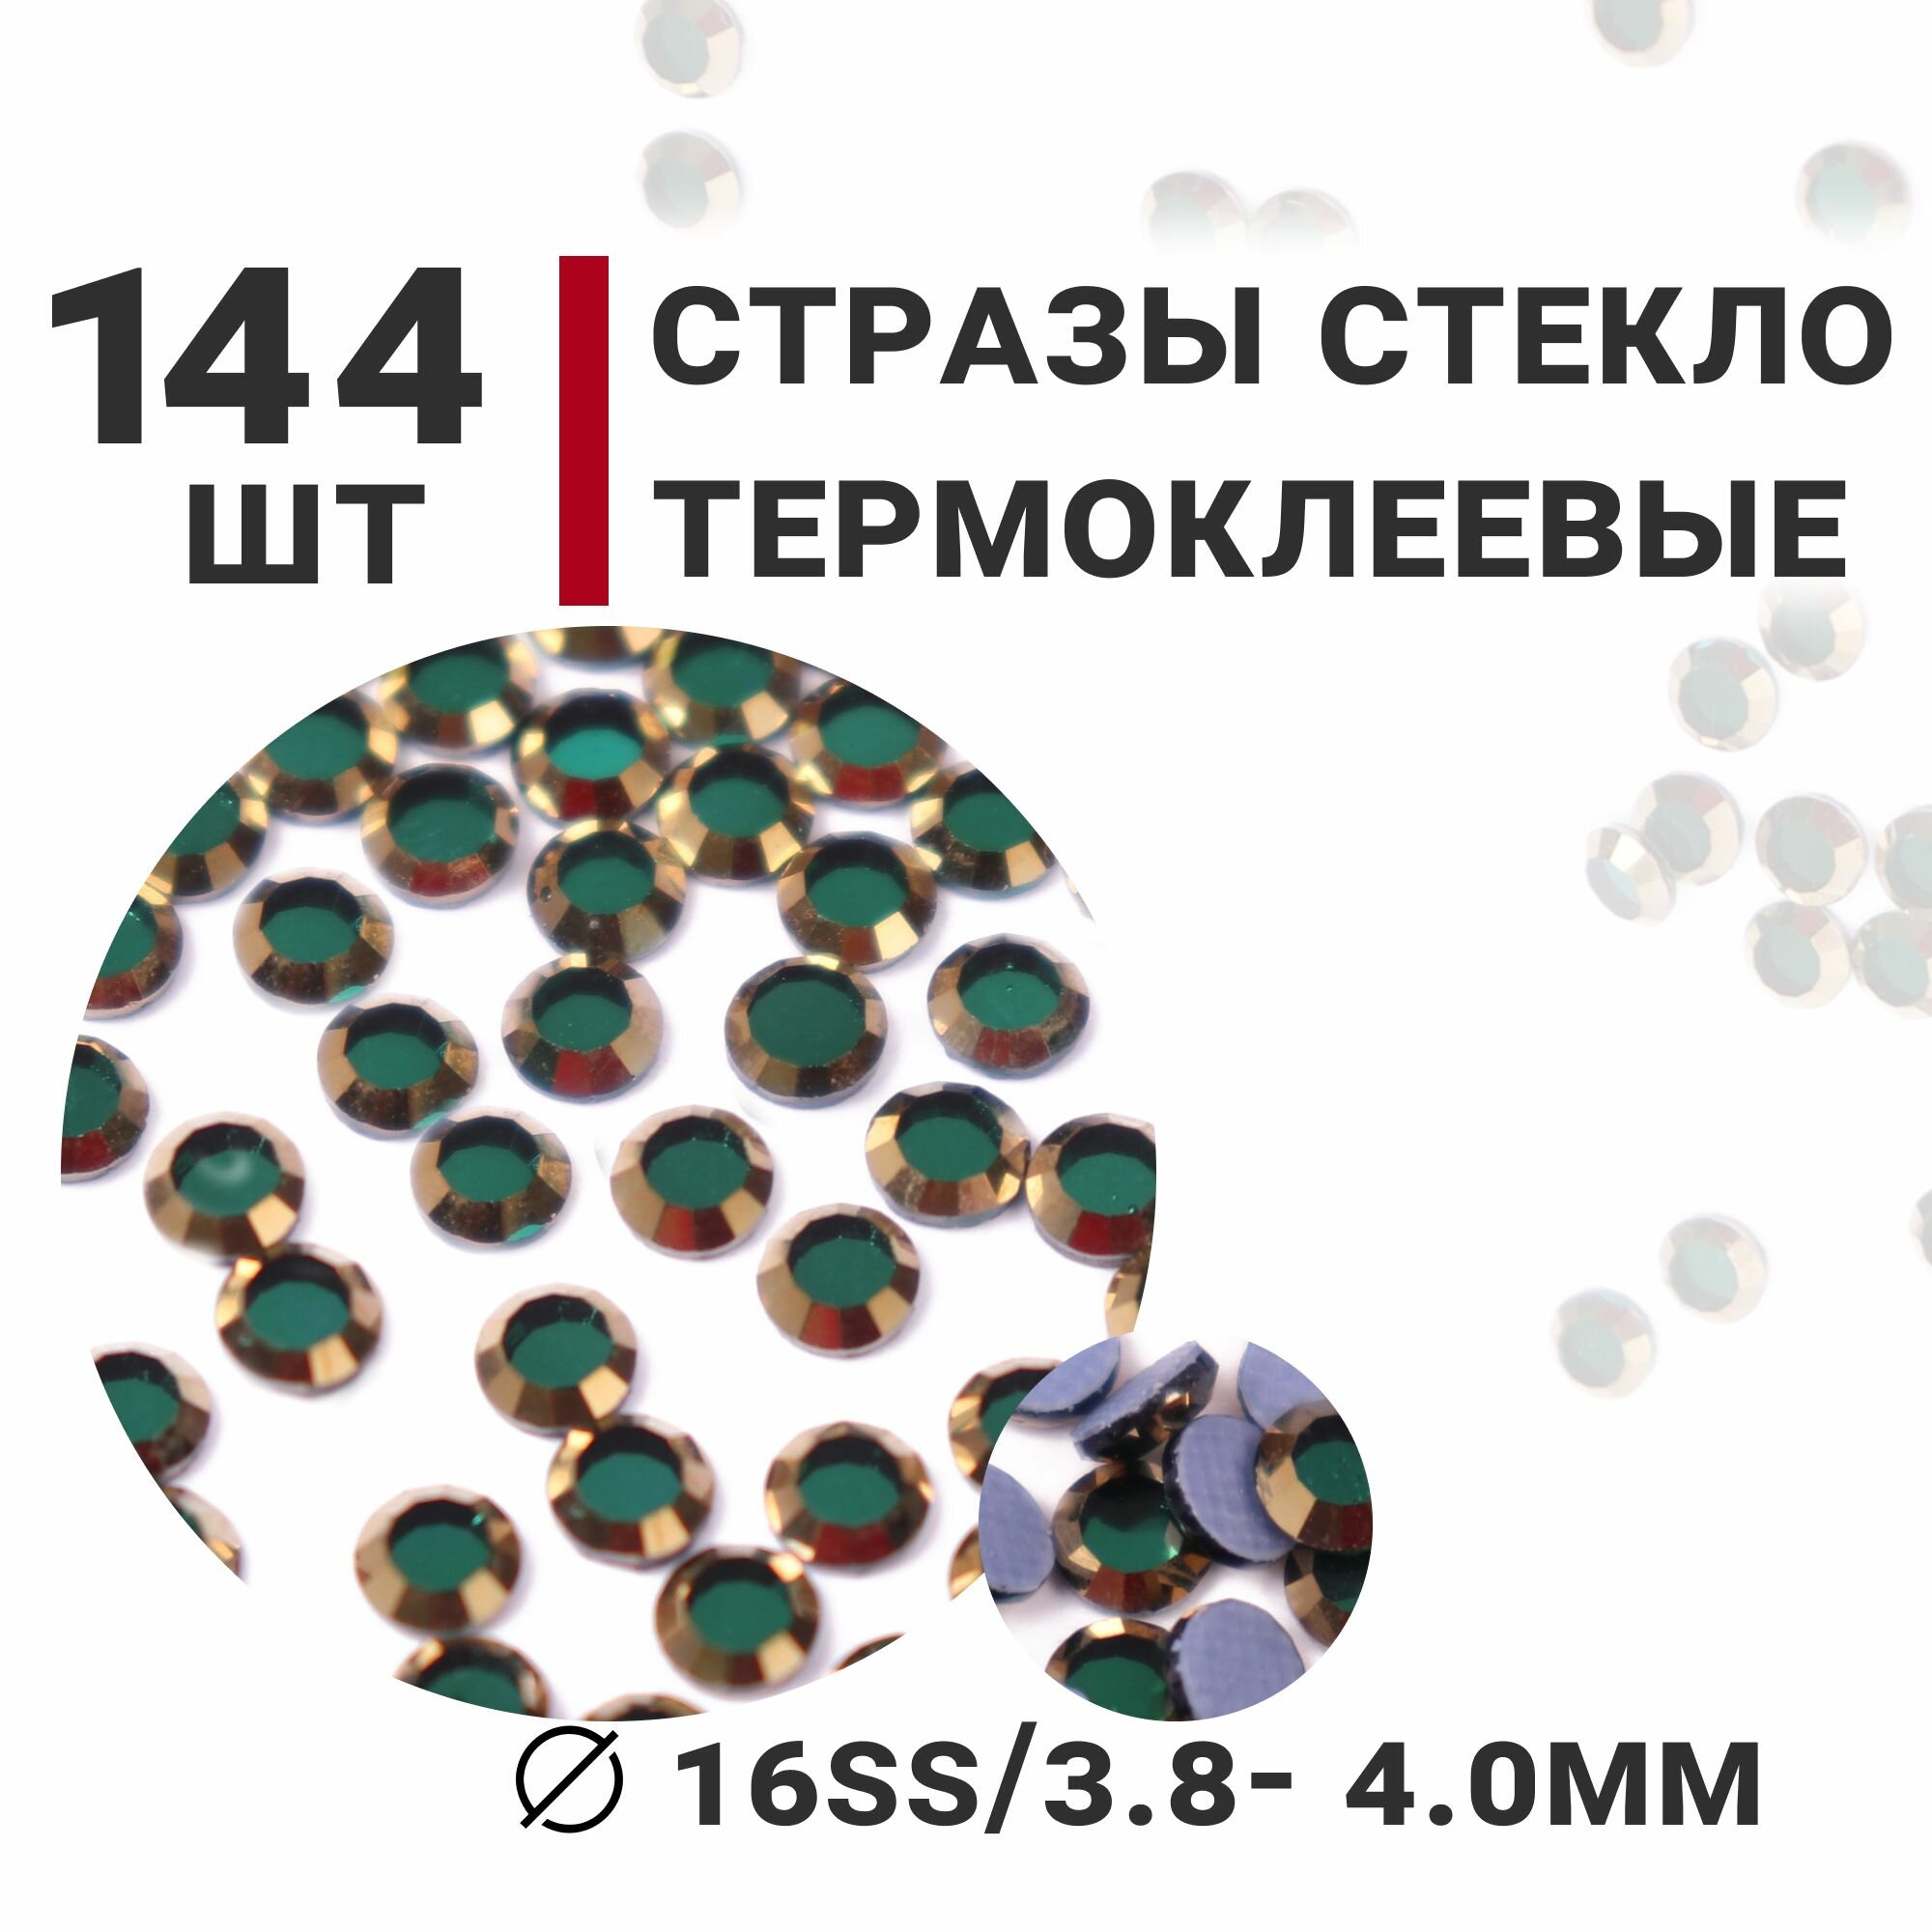 Стразы стеклянные термоклеевые, 144 шт, ss16 (3.8-4.0мм), цвет Зеленый/Золотой, Усеченный конус